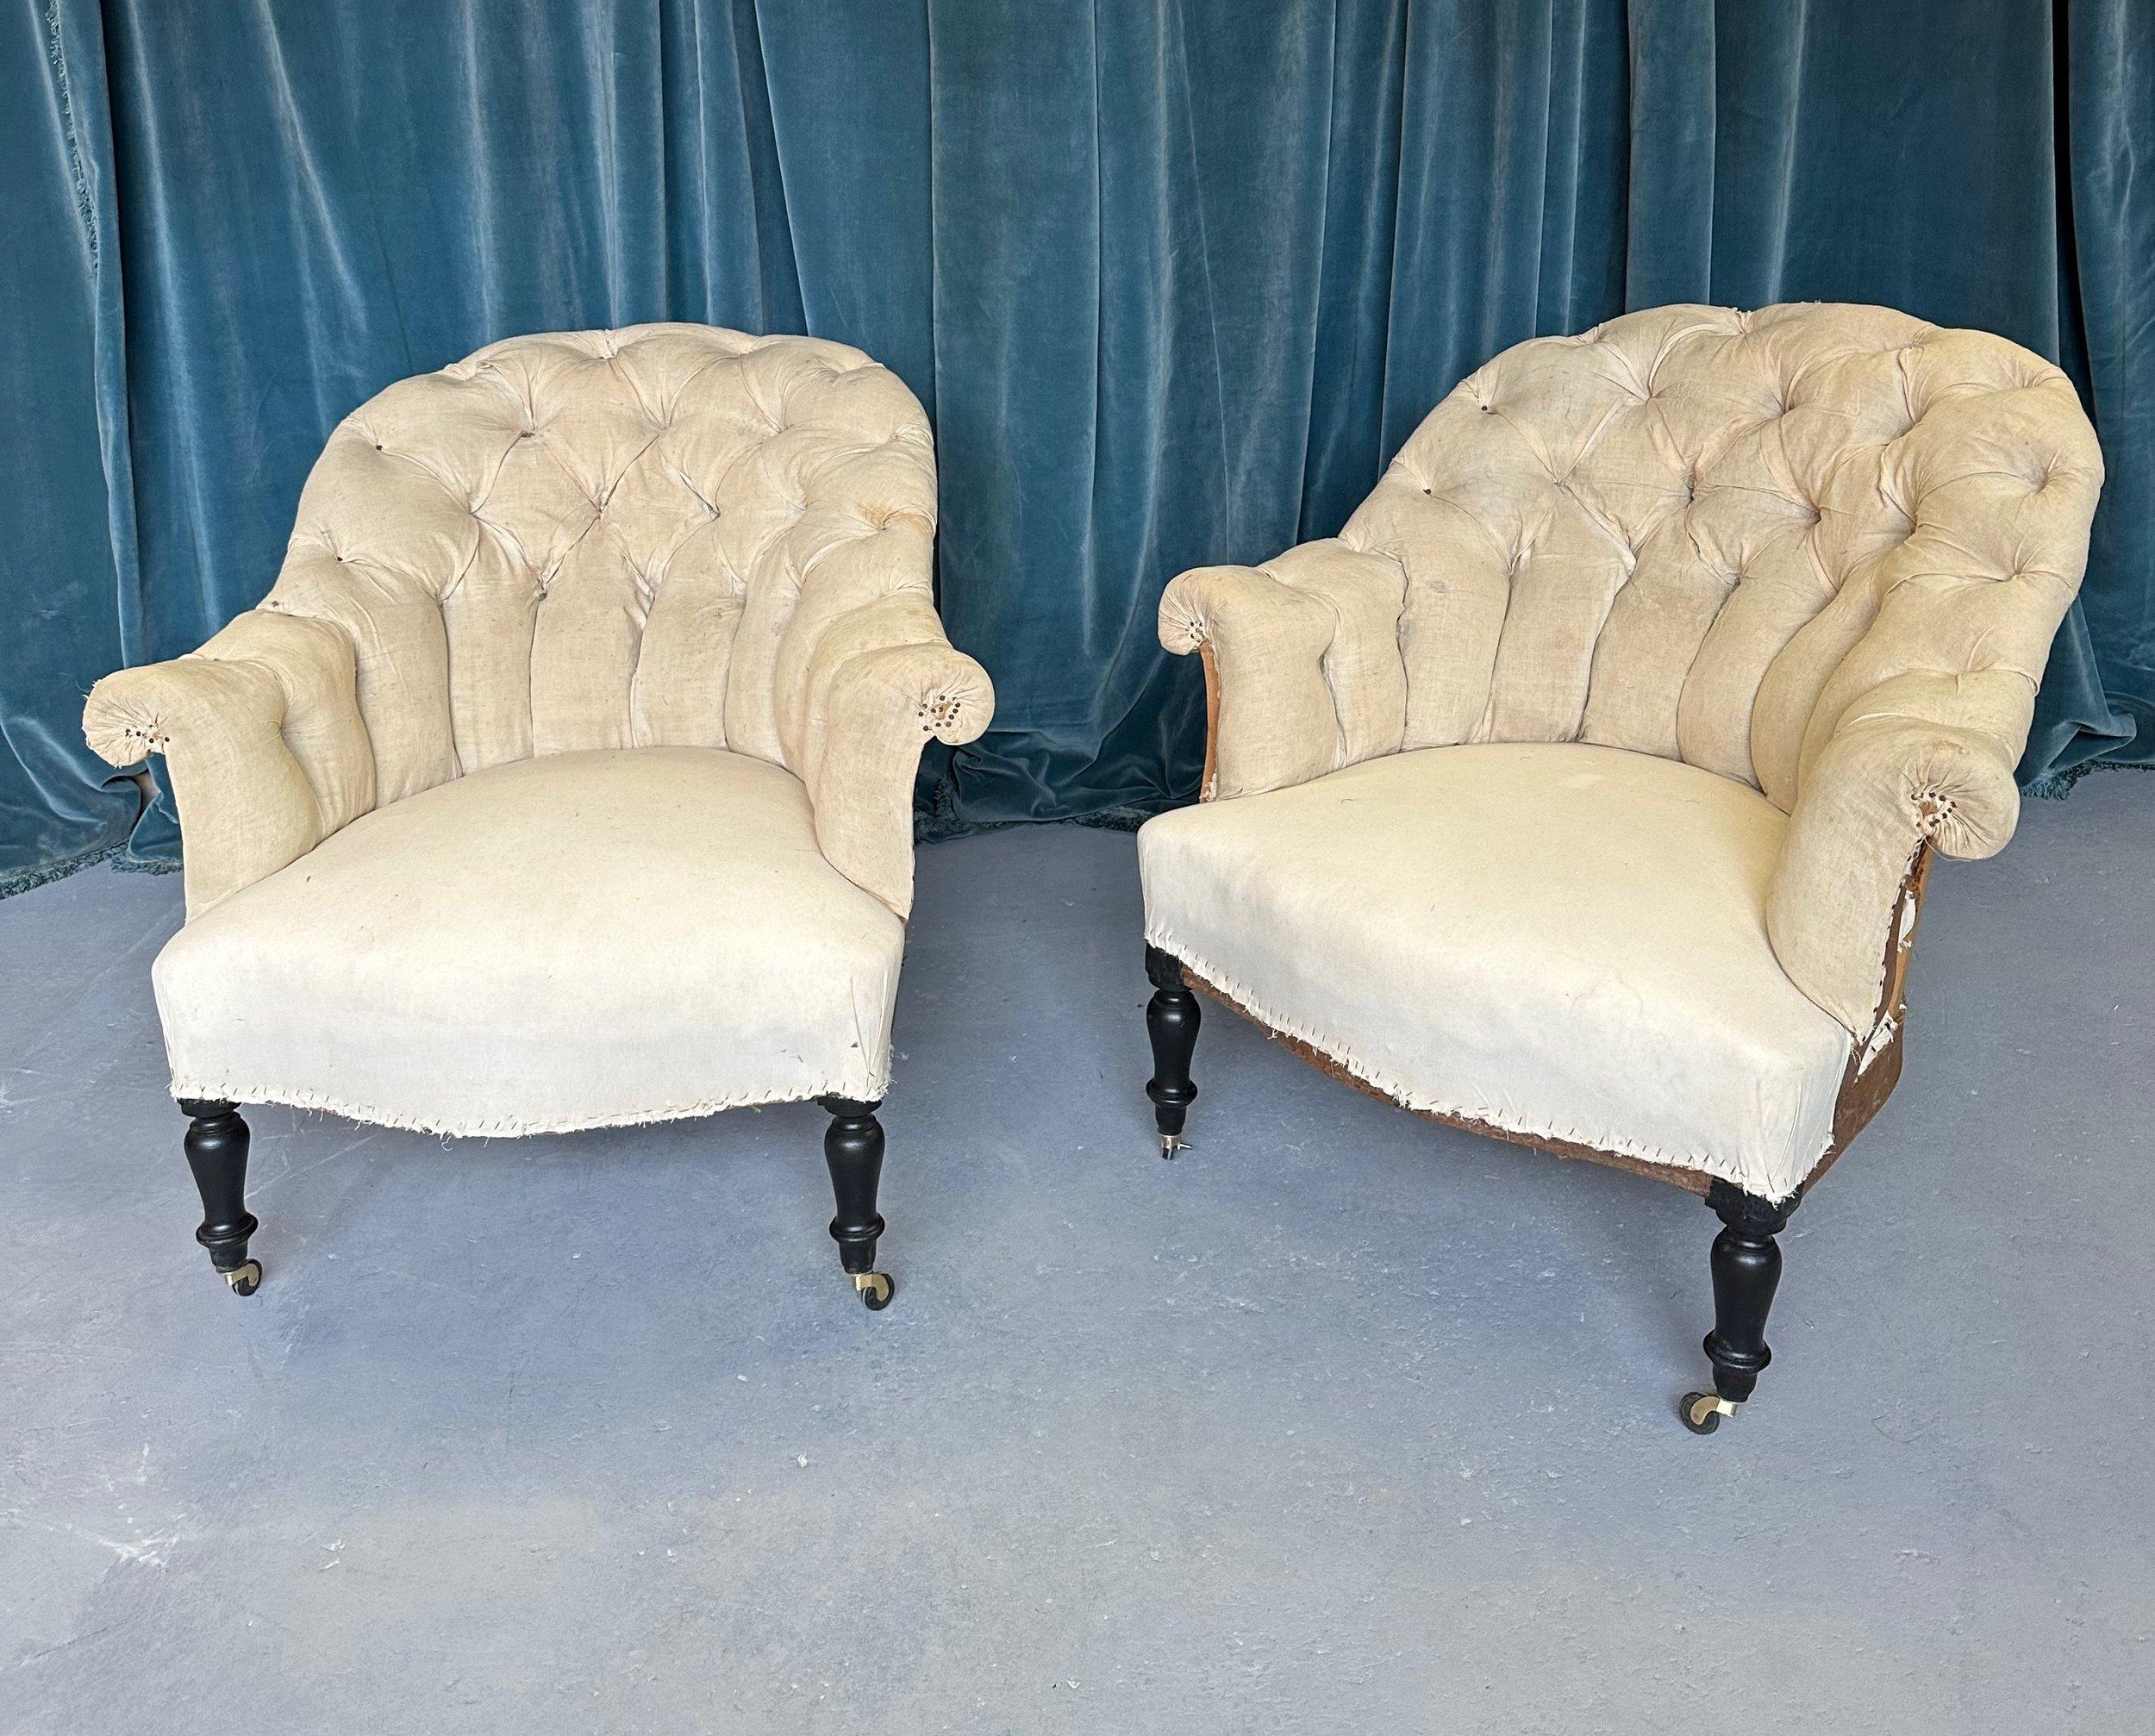 Ein hübsches Paar französischer Sessel aus dem 19. Jahrhundert mit diamantgetufteten Rückenlehnen und geschwungenen Armlehnen. Dieses Sesselpaar aus der Zeit Napoleons III. zeichnet sich durch die komplizierten Details und die romantische Schönheit